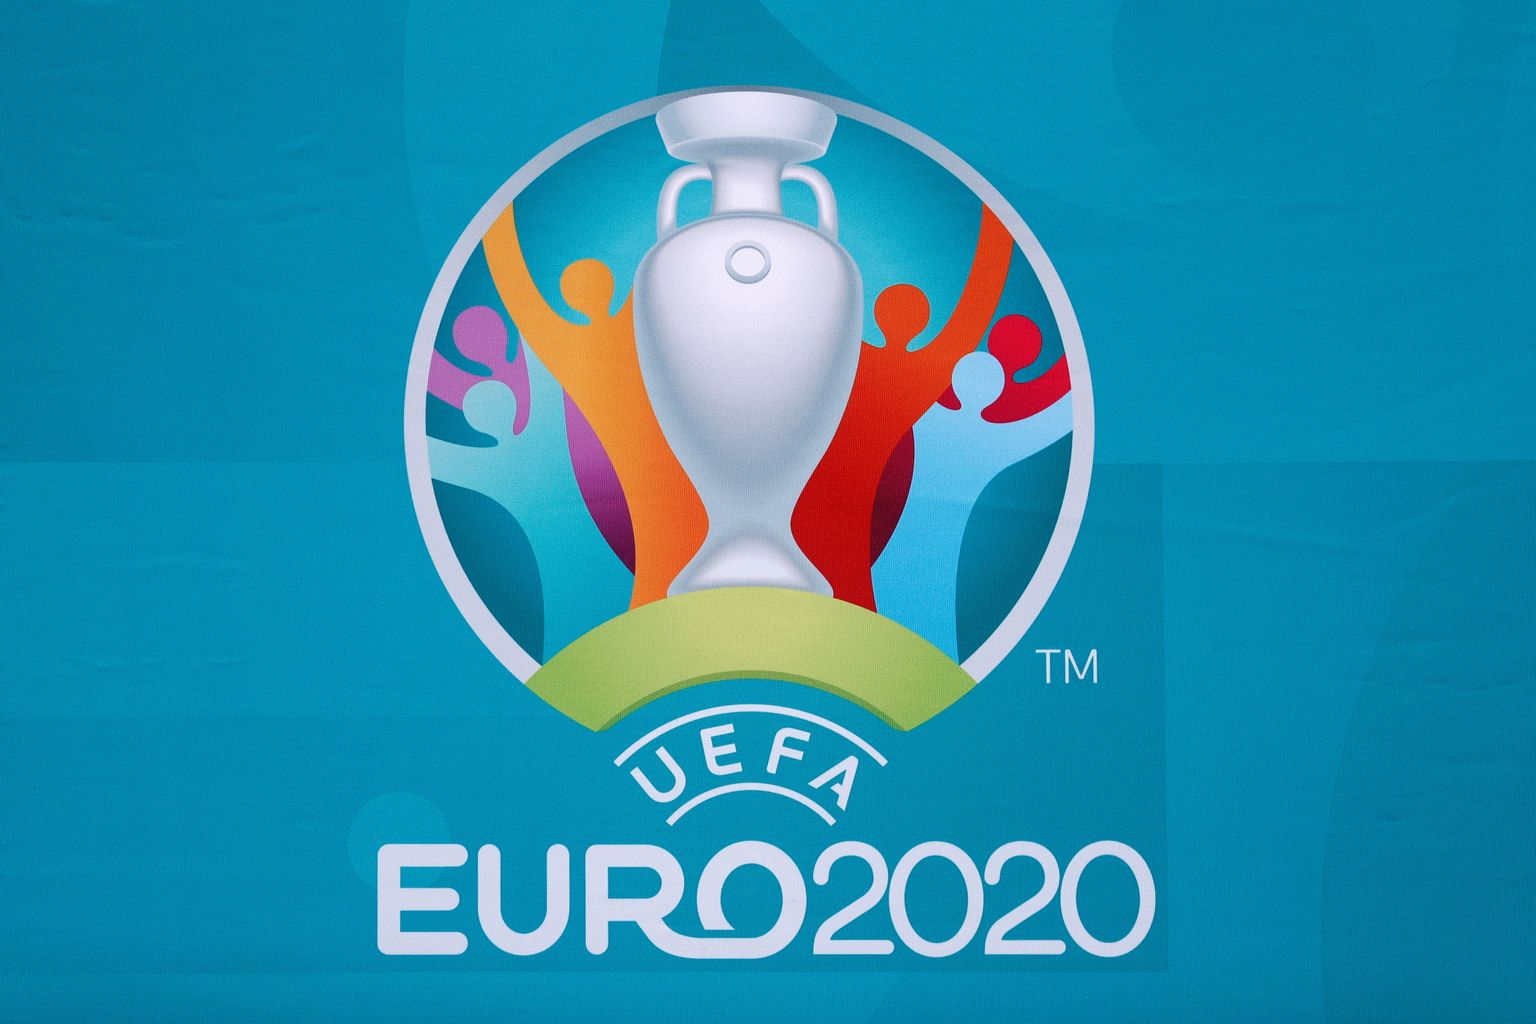 "EURO 2020" logo